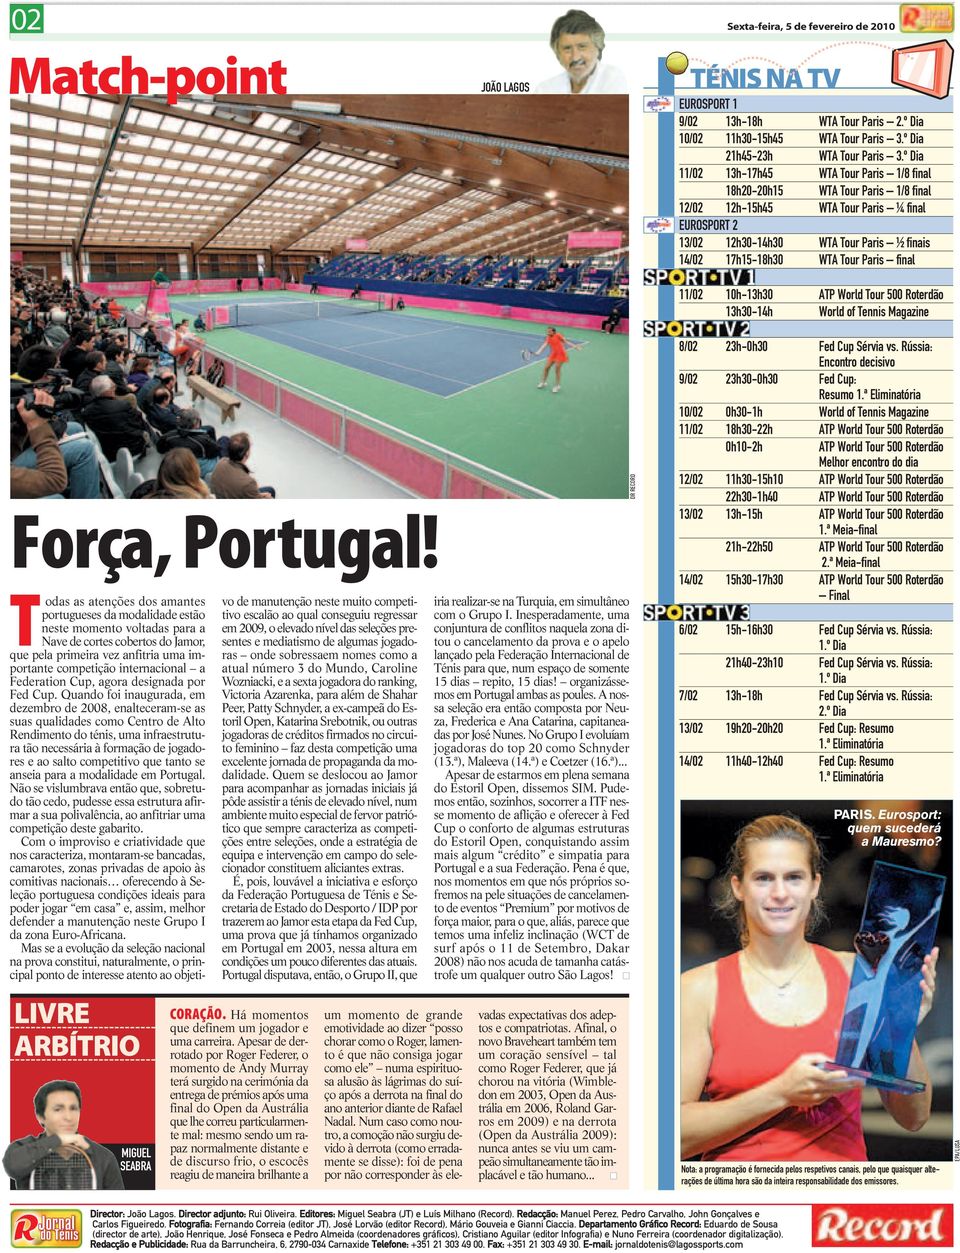 Tour Paris final 11/02 10h-13h30 ATP World Tour 500 Roterdão 13h30-14h World of Tennis Magazine Força,Portugal!